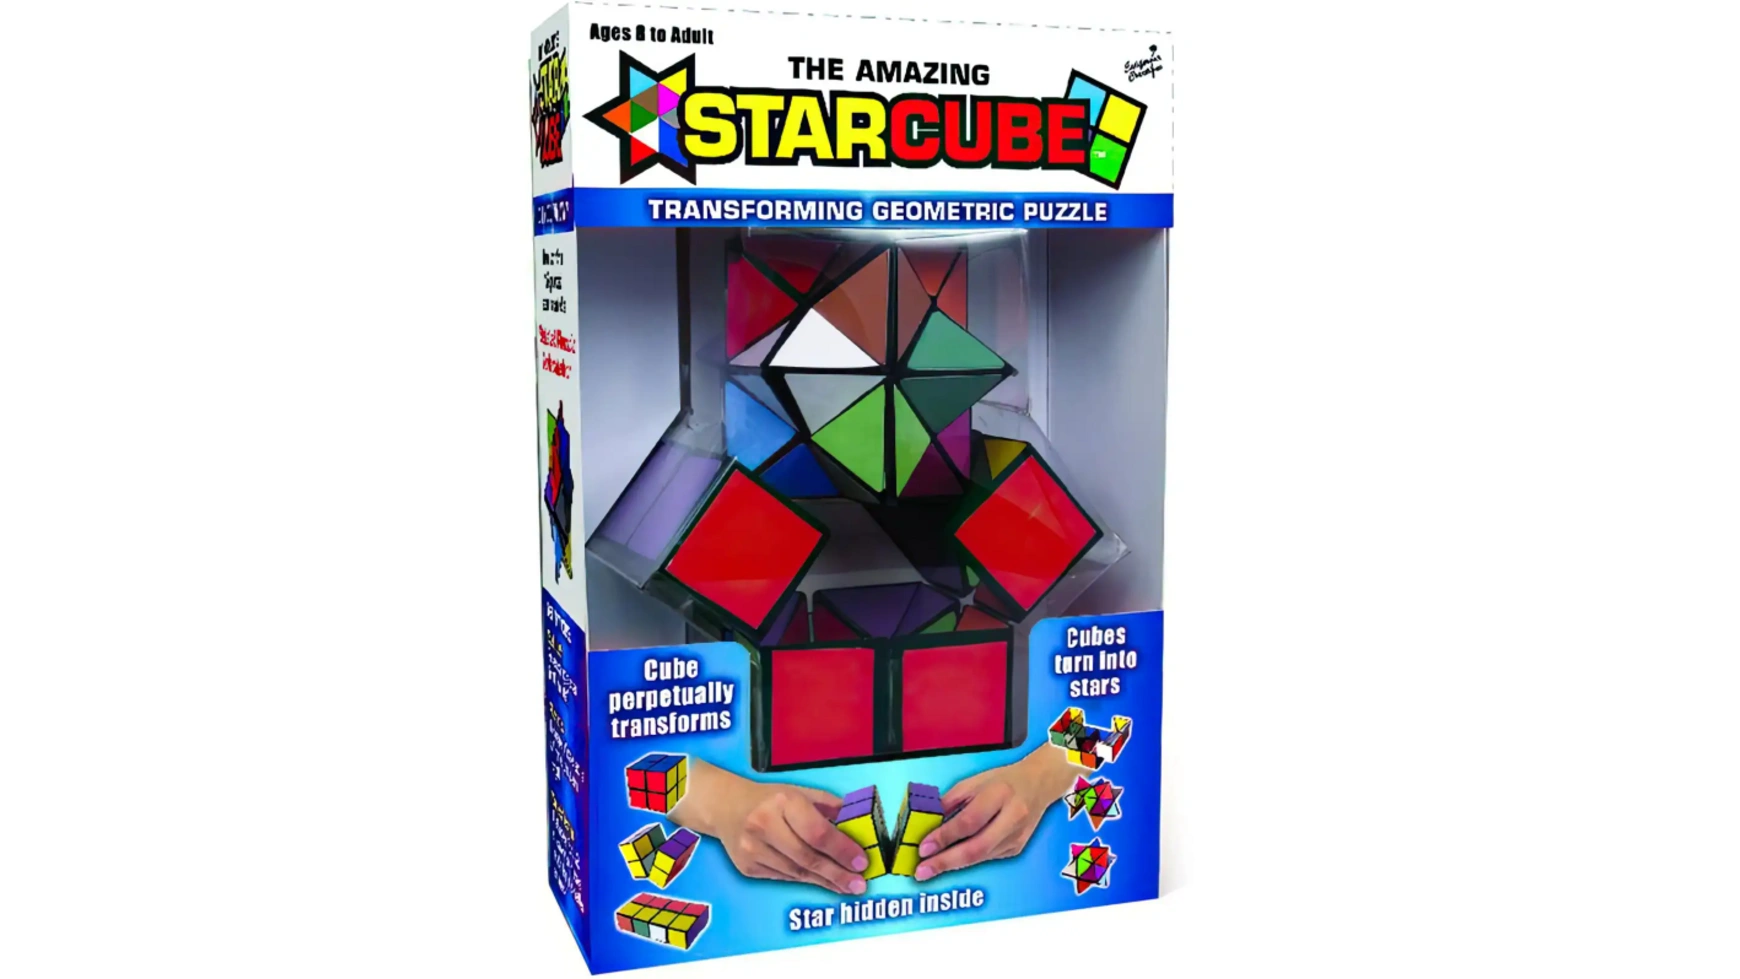 Звездный волшебный куб Elliot StarCube игра на ловкость и терпение, 5,5 х 5,5 см, красочный магический куб 3x3x3 пазл оптовая цена кубик moyu 3x3 yongjun magico cubo 3 3 пазл без наклеек профессиональный скоростной куб игрушка